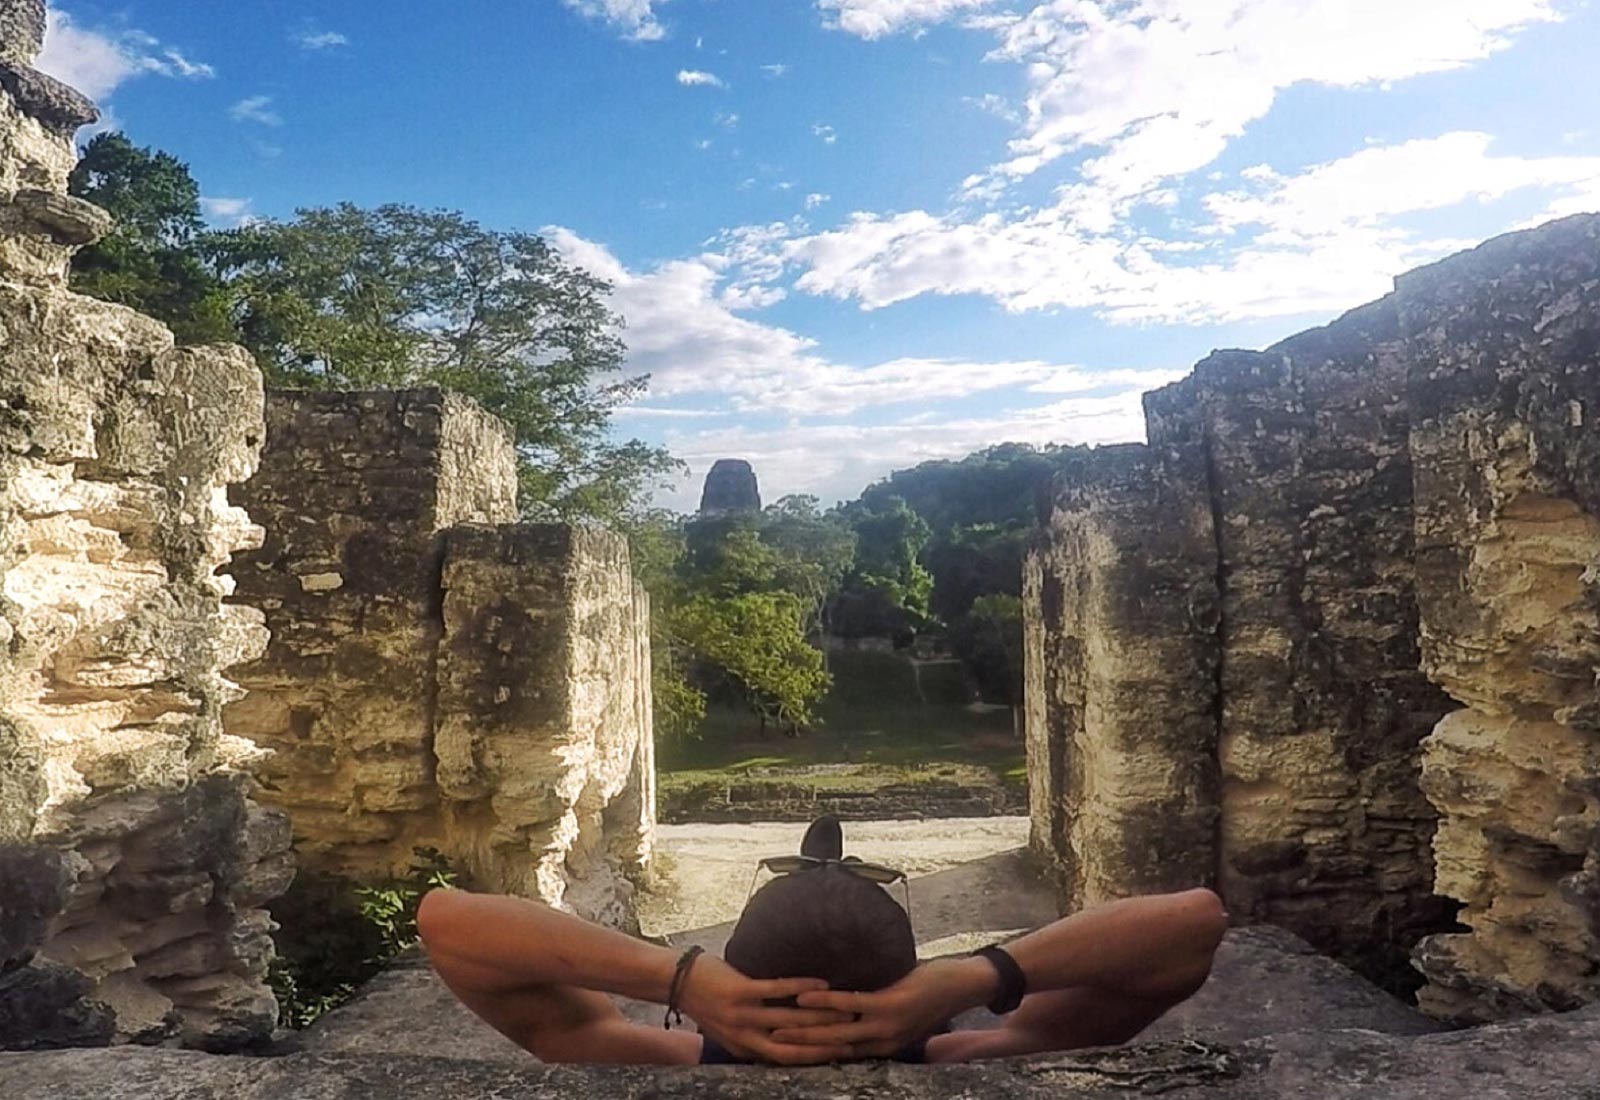 David Simpson amid Mayan ruins in Tikal, Guatemala. A dislocated shoulder & Tikal Ruins